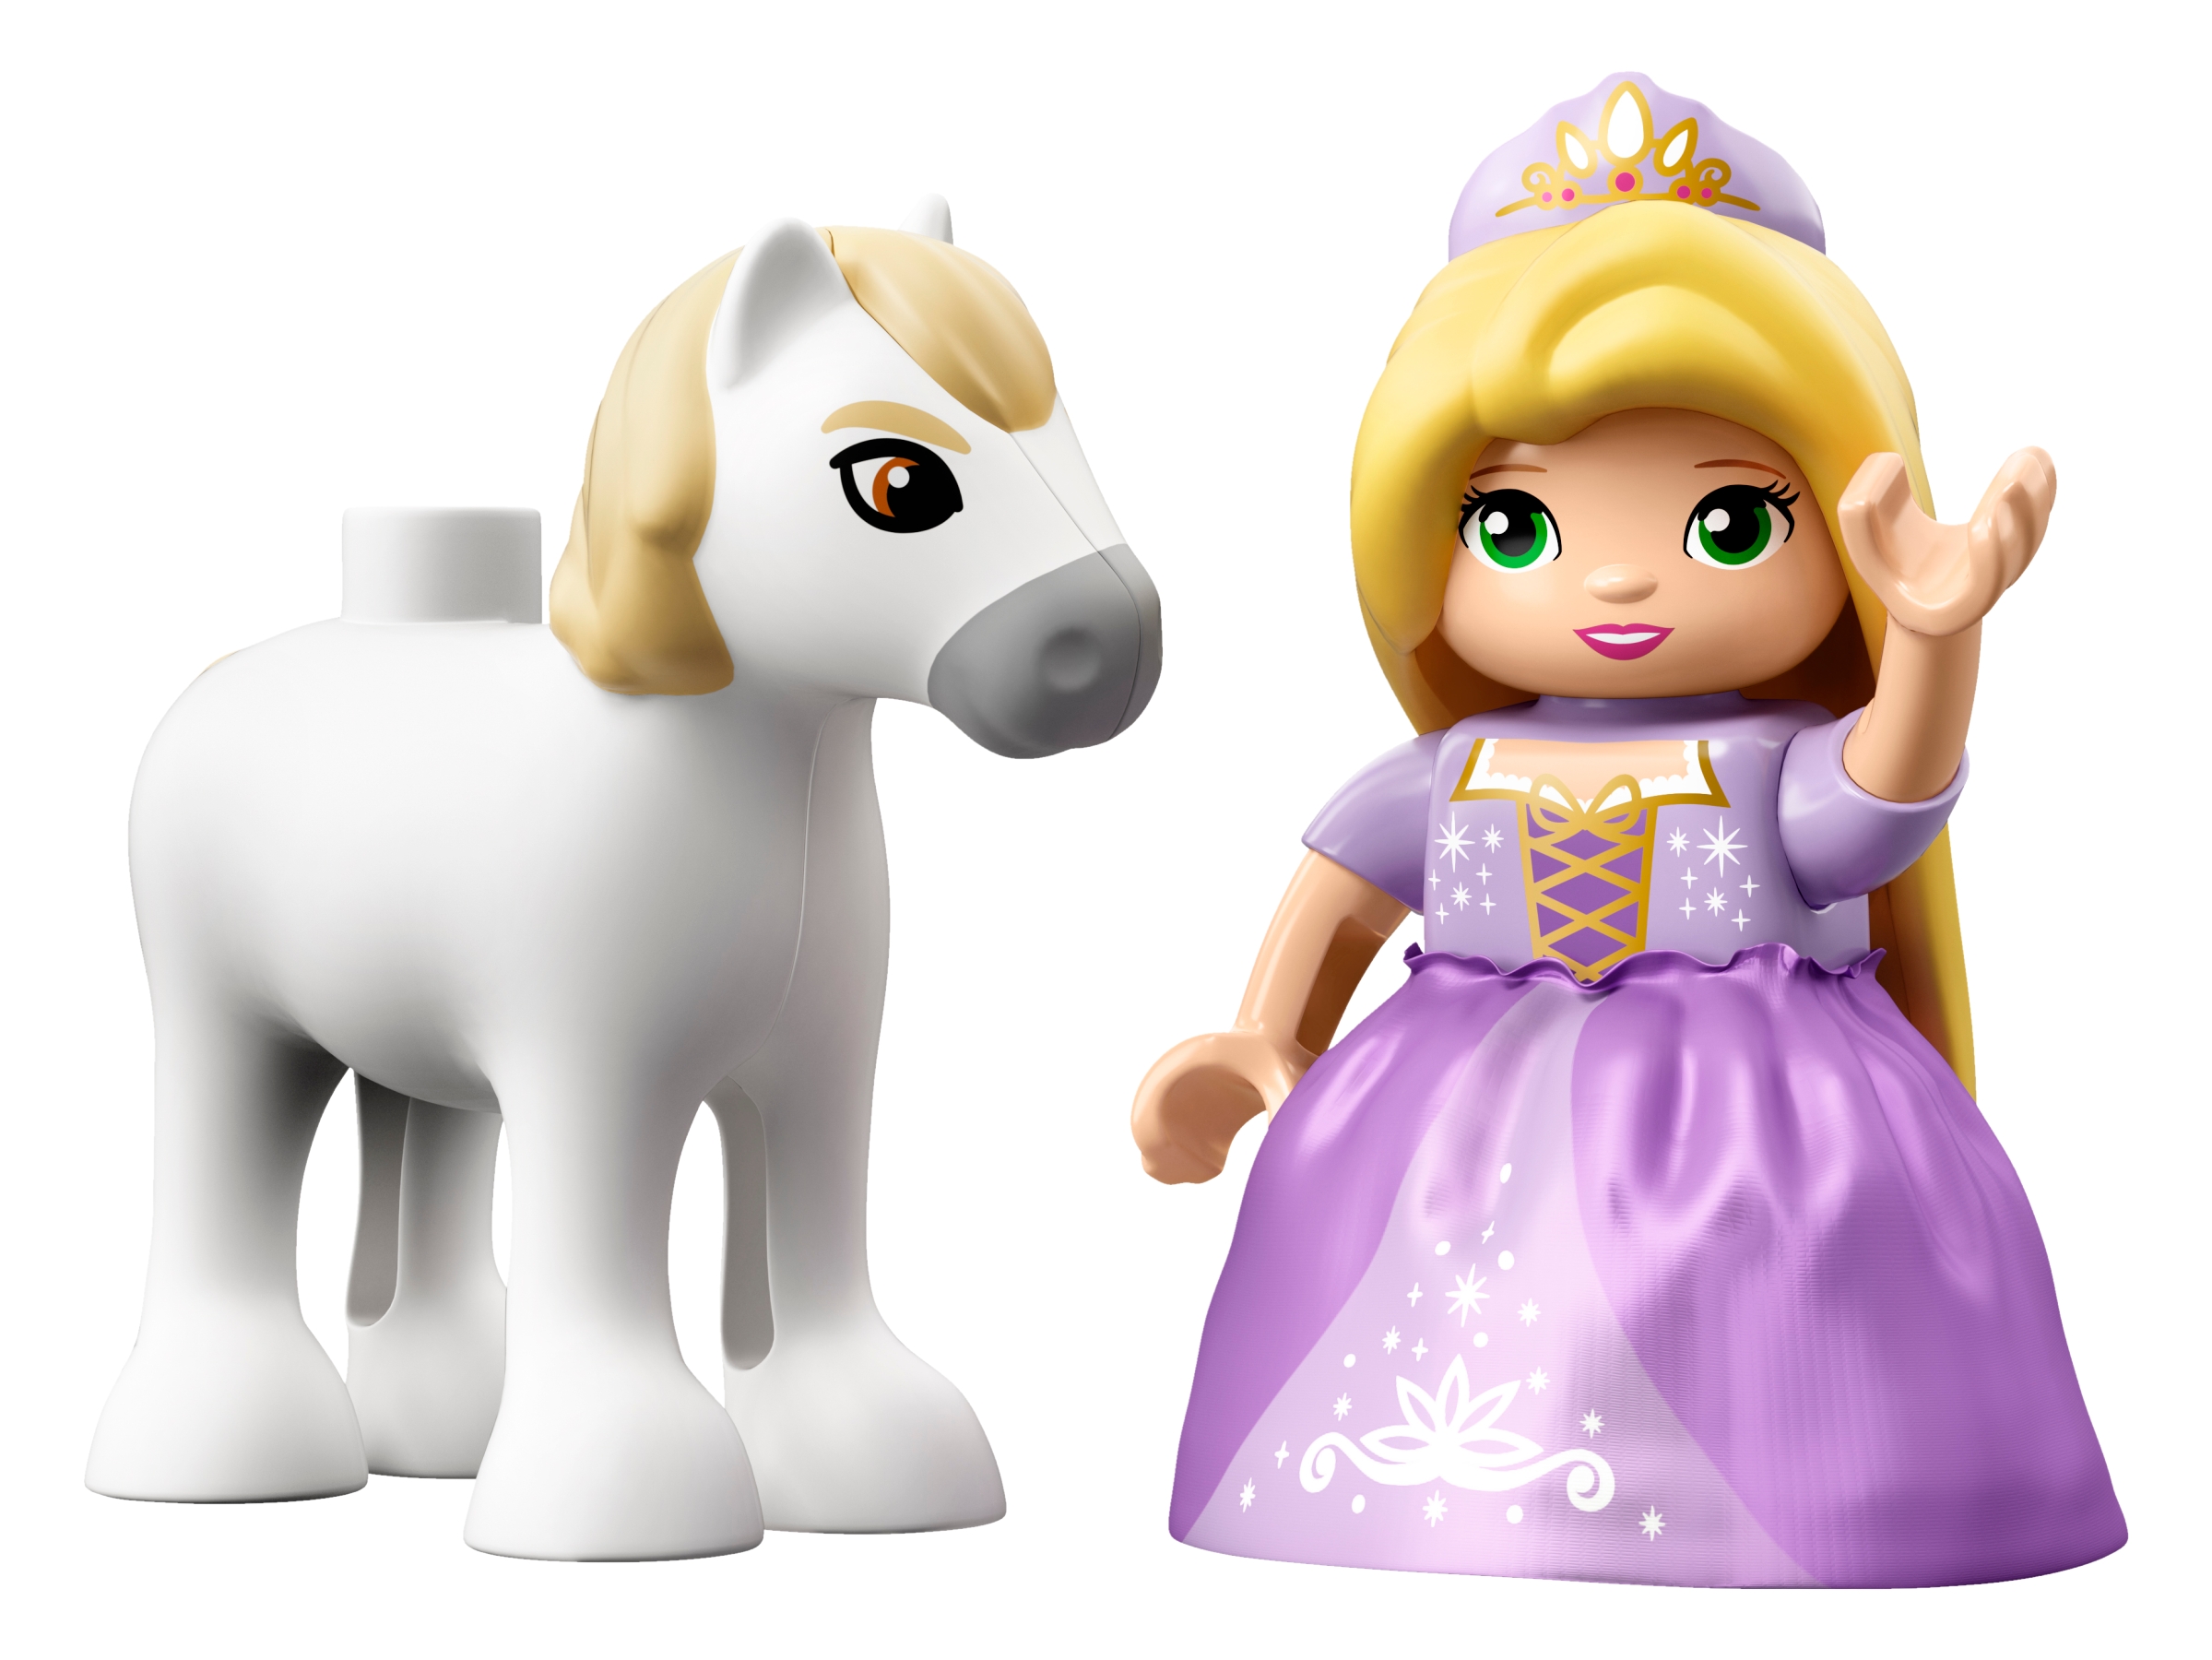 Lego Duplo Disney Princess Belle & Rapunzel Figures  Sealed In Bag W/ Tracking 